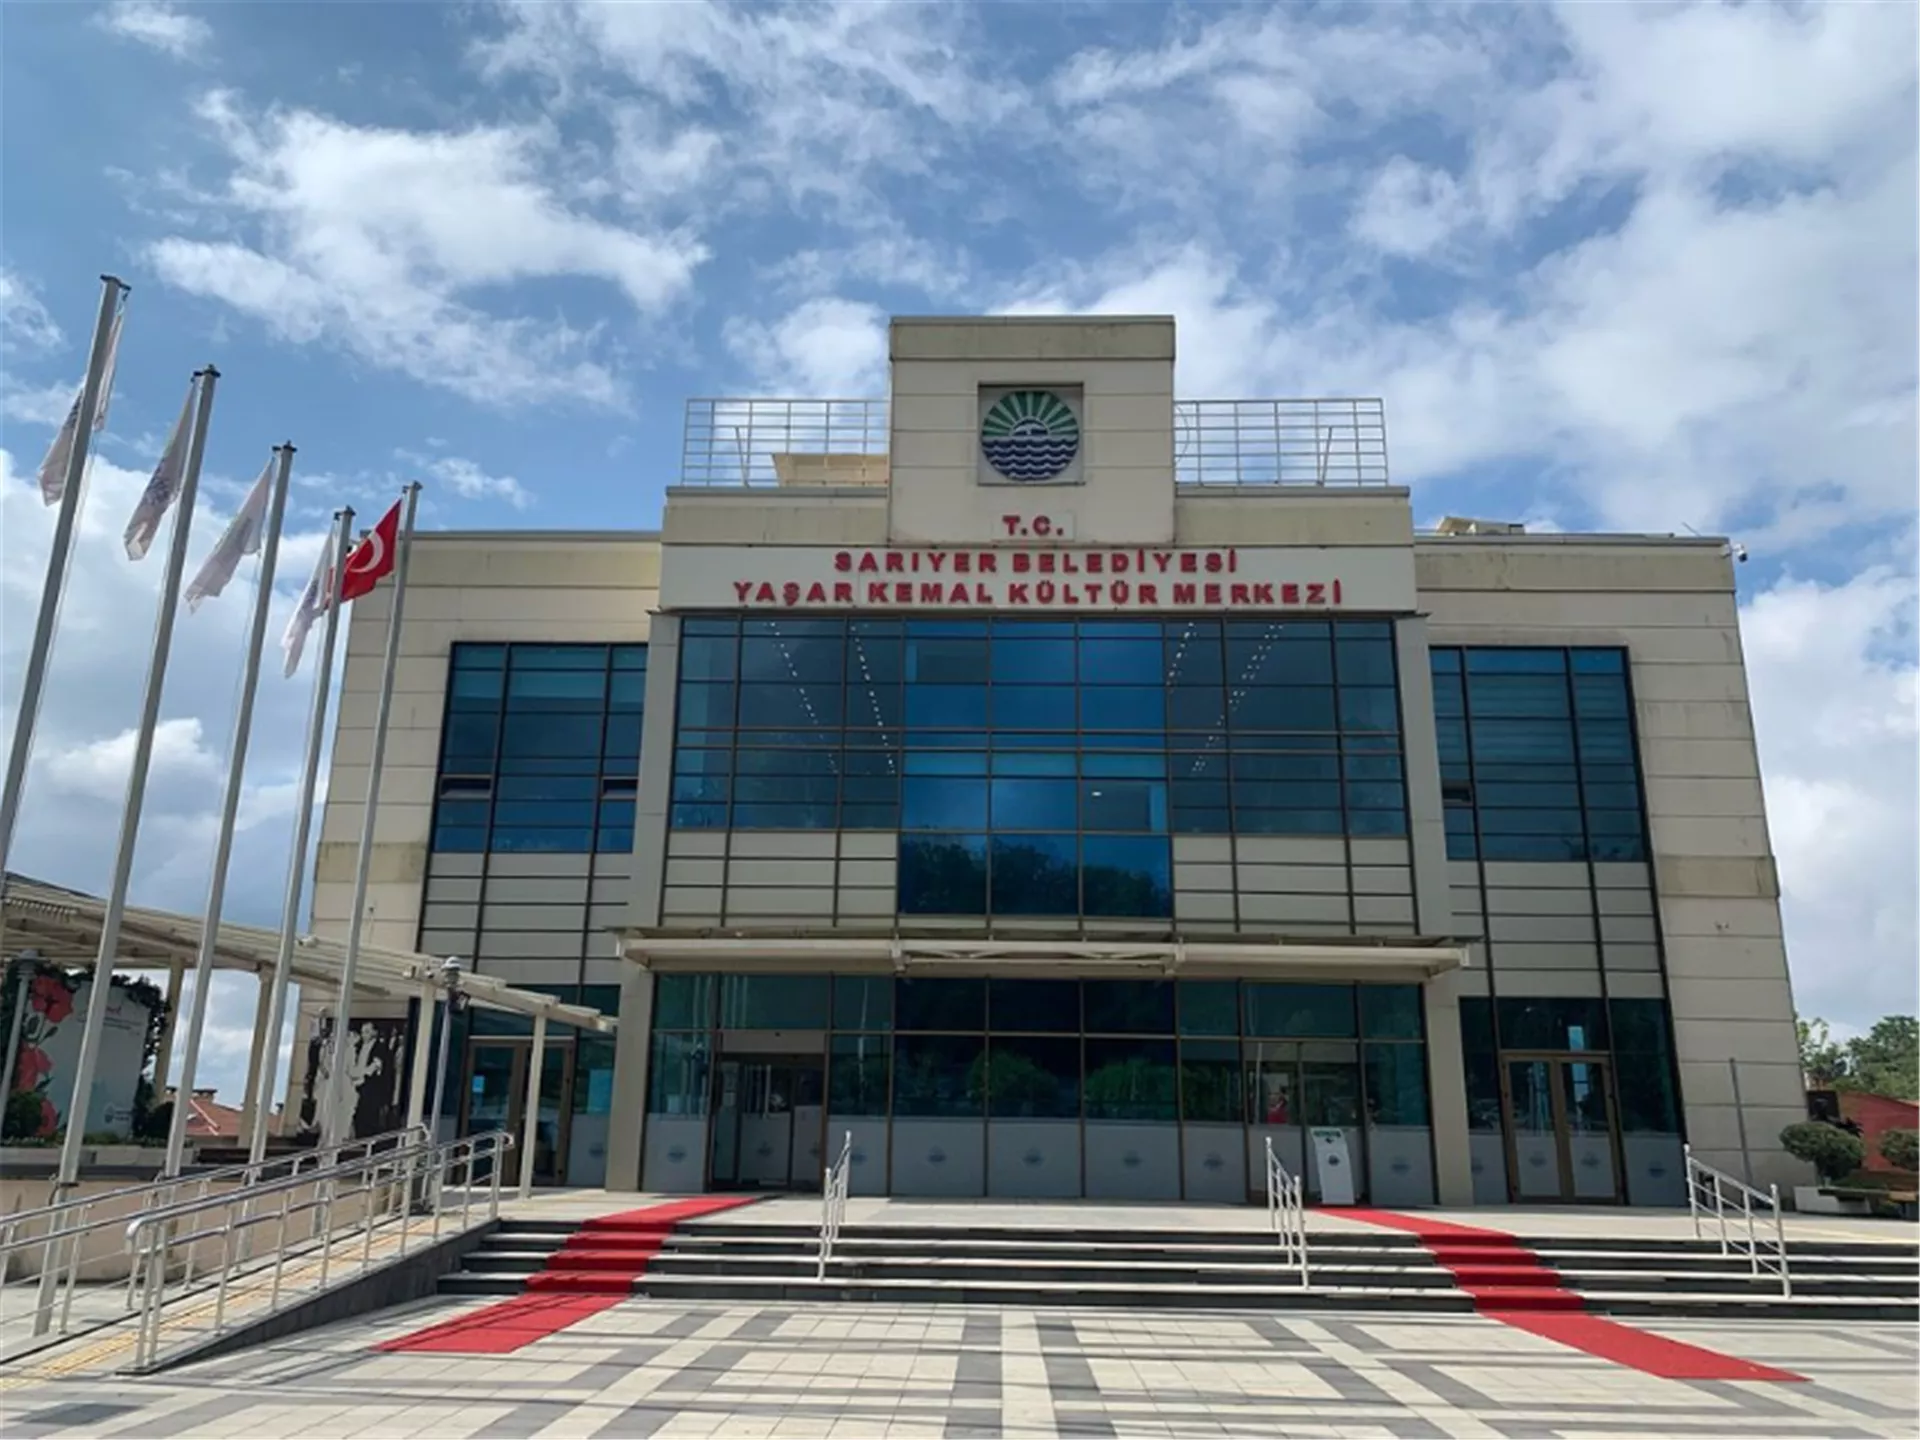 Yaşar Kemal Kültür Merkezi